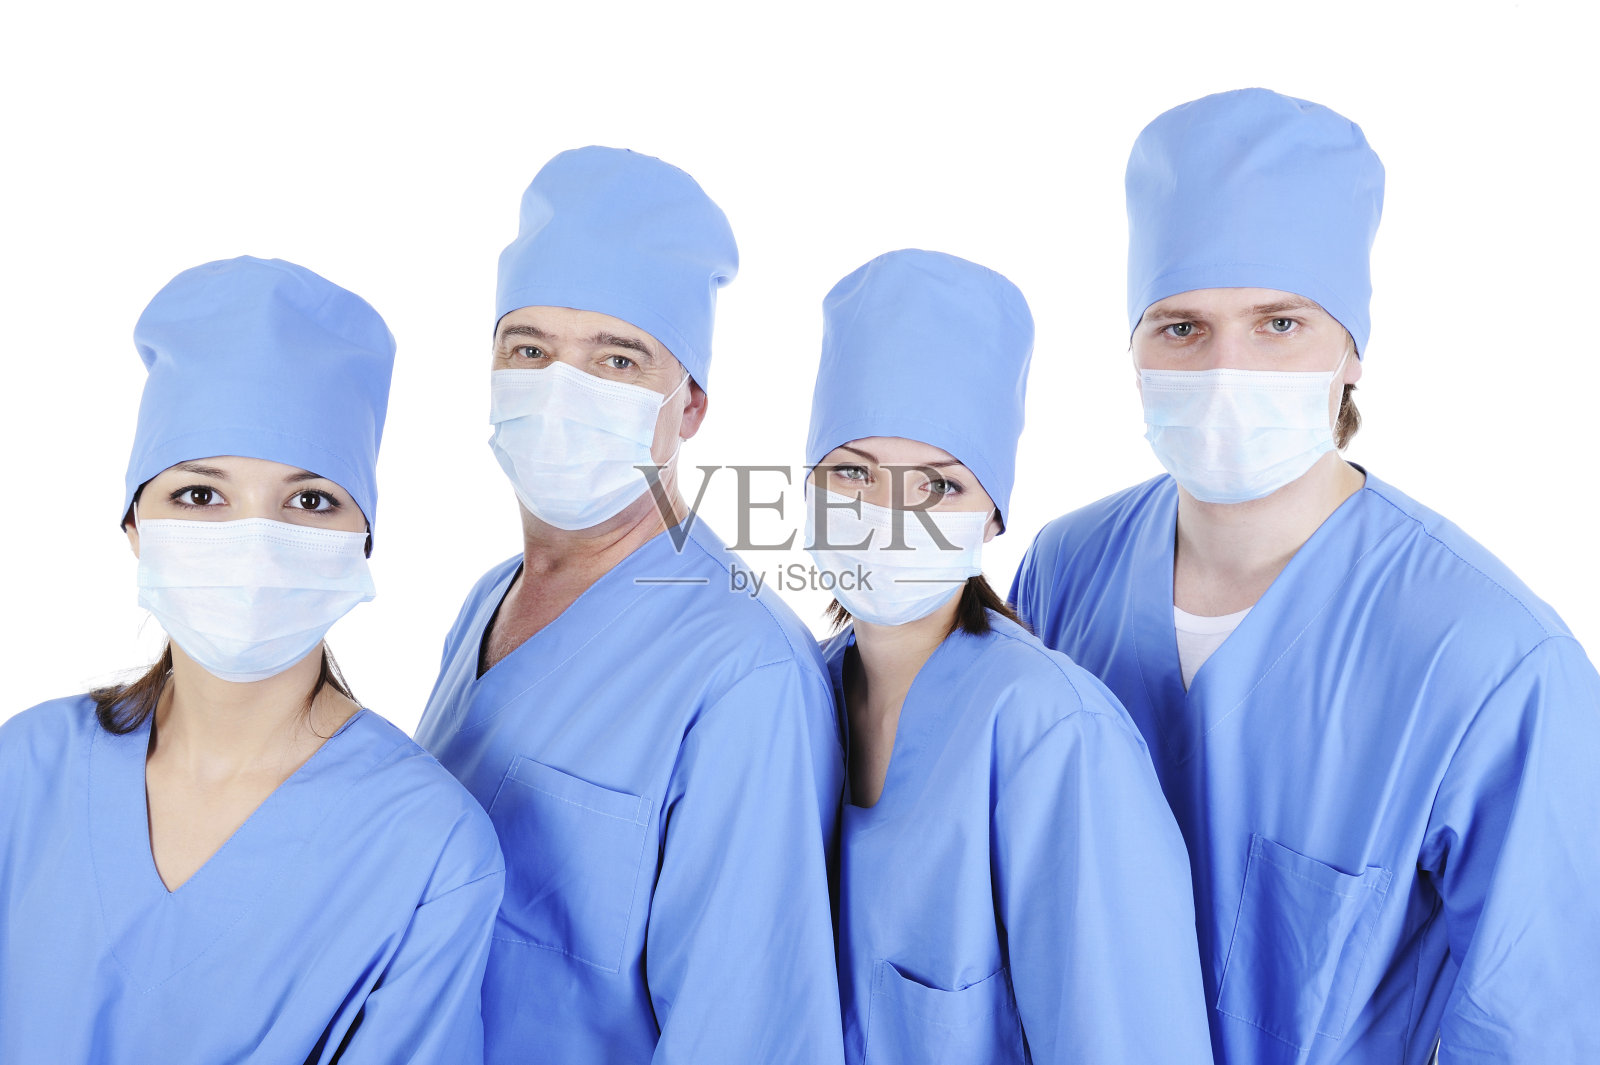 一群穿着蓝色制服的外科医生照片摄影图片